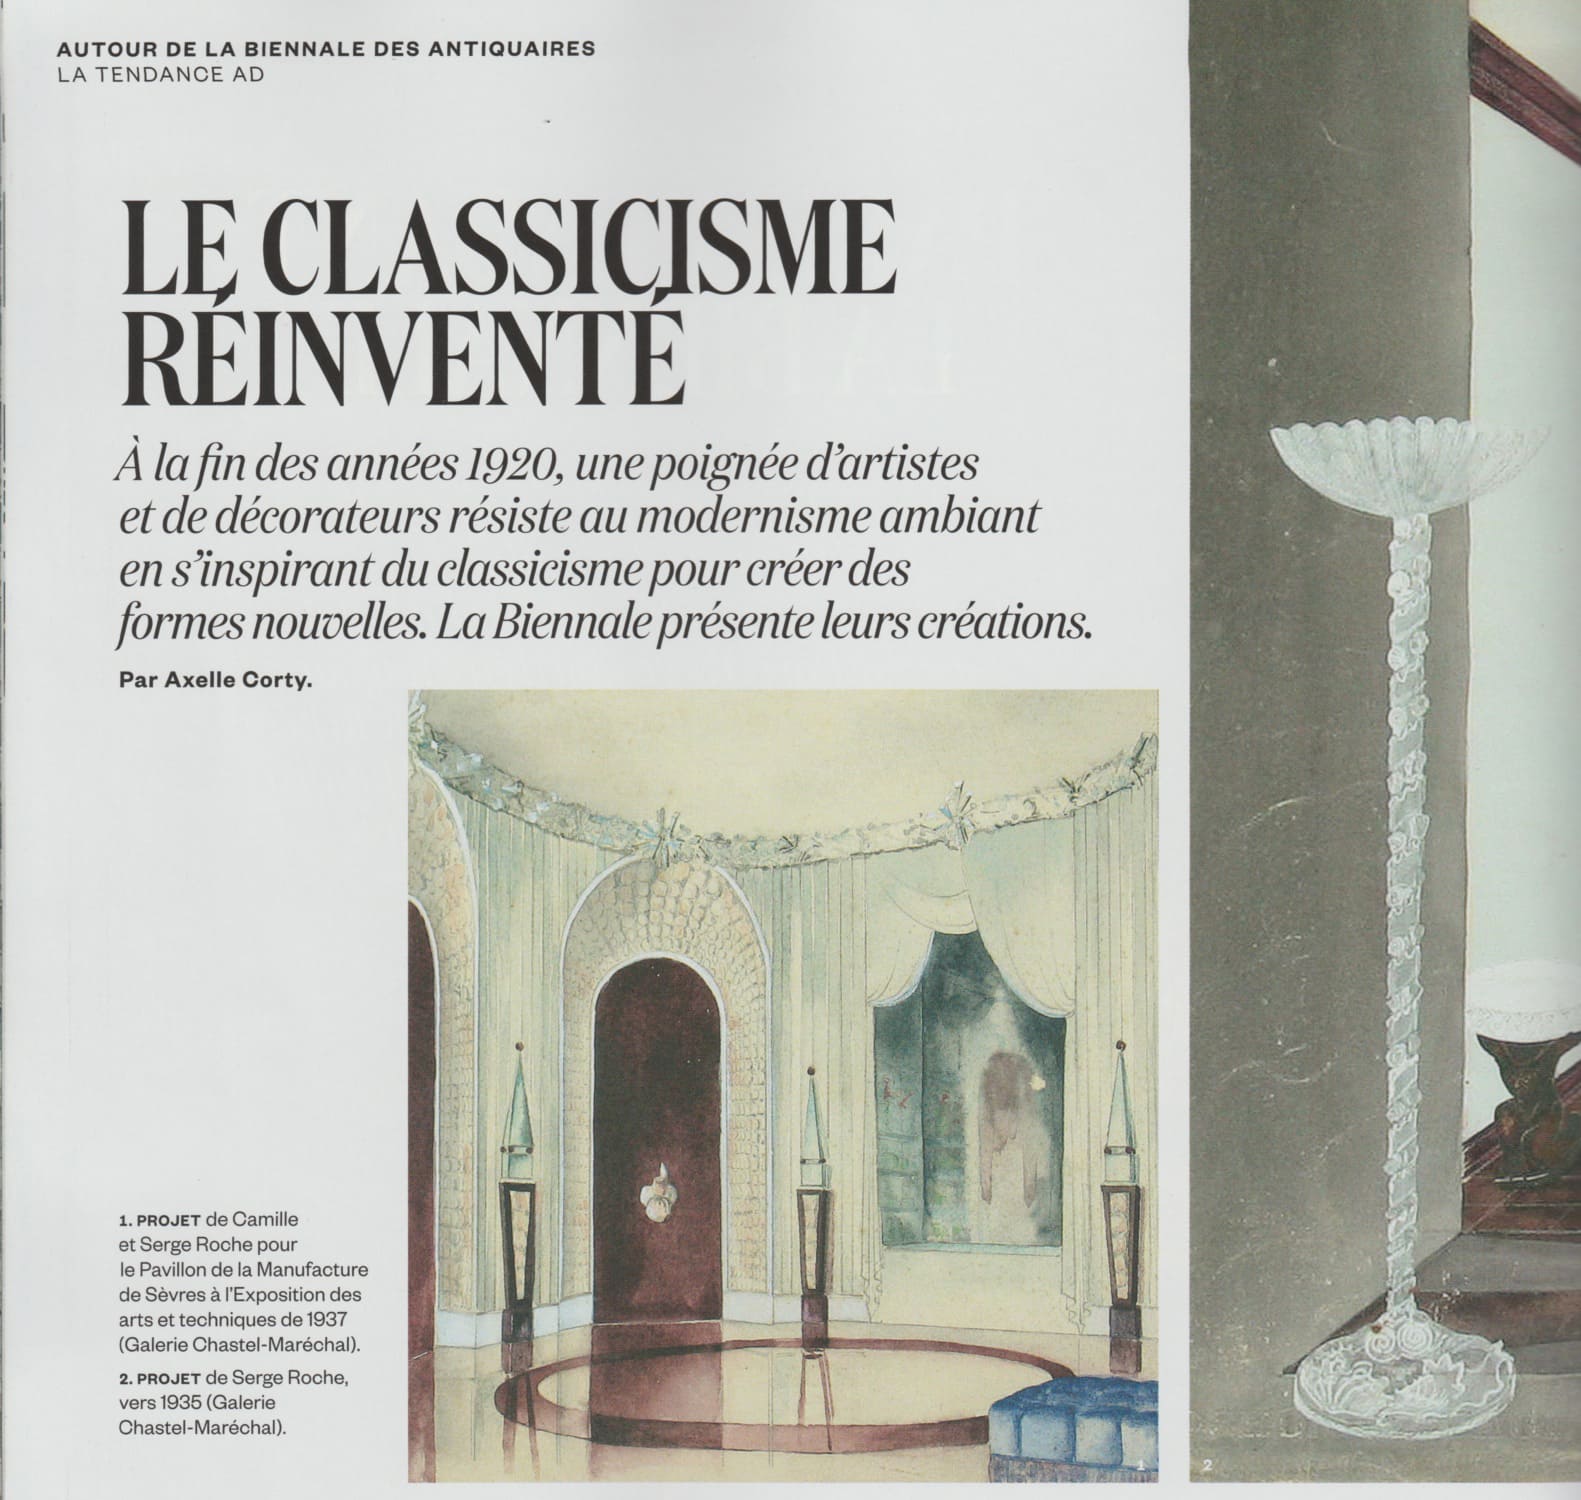 AD, August/September 2016 – “Le Classicisme réinventé” – Serge Roche